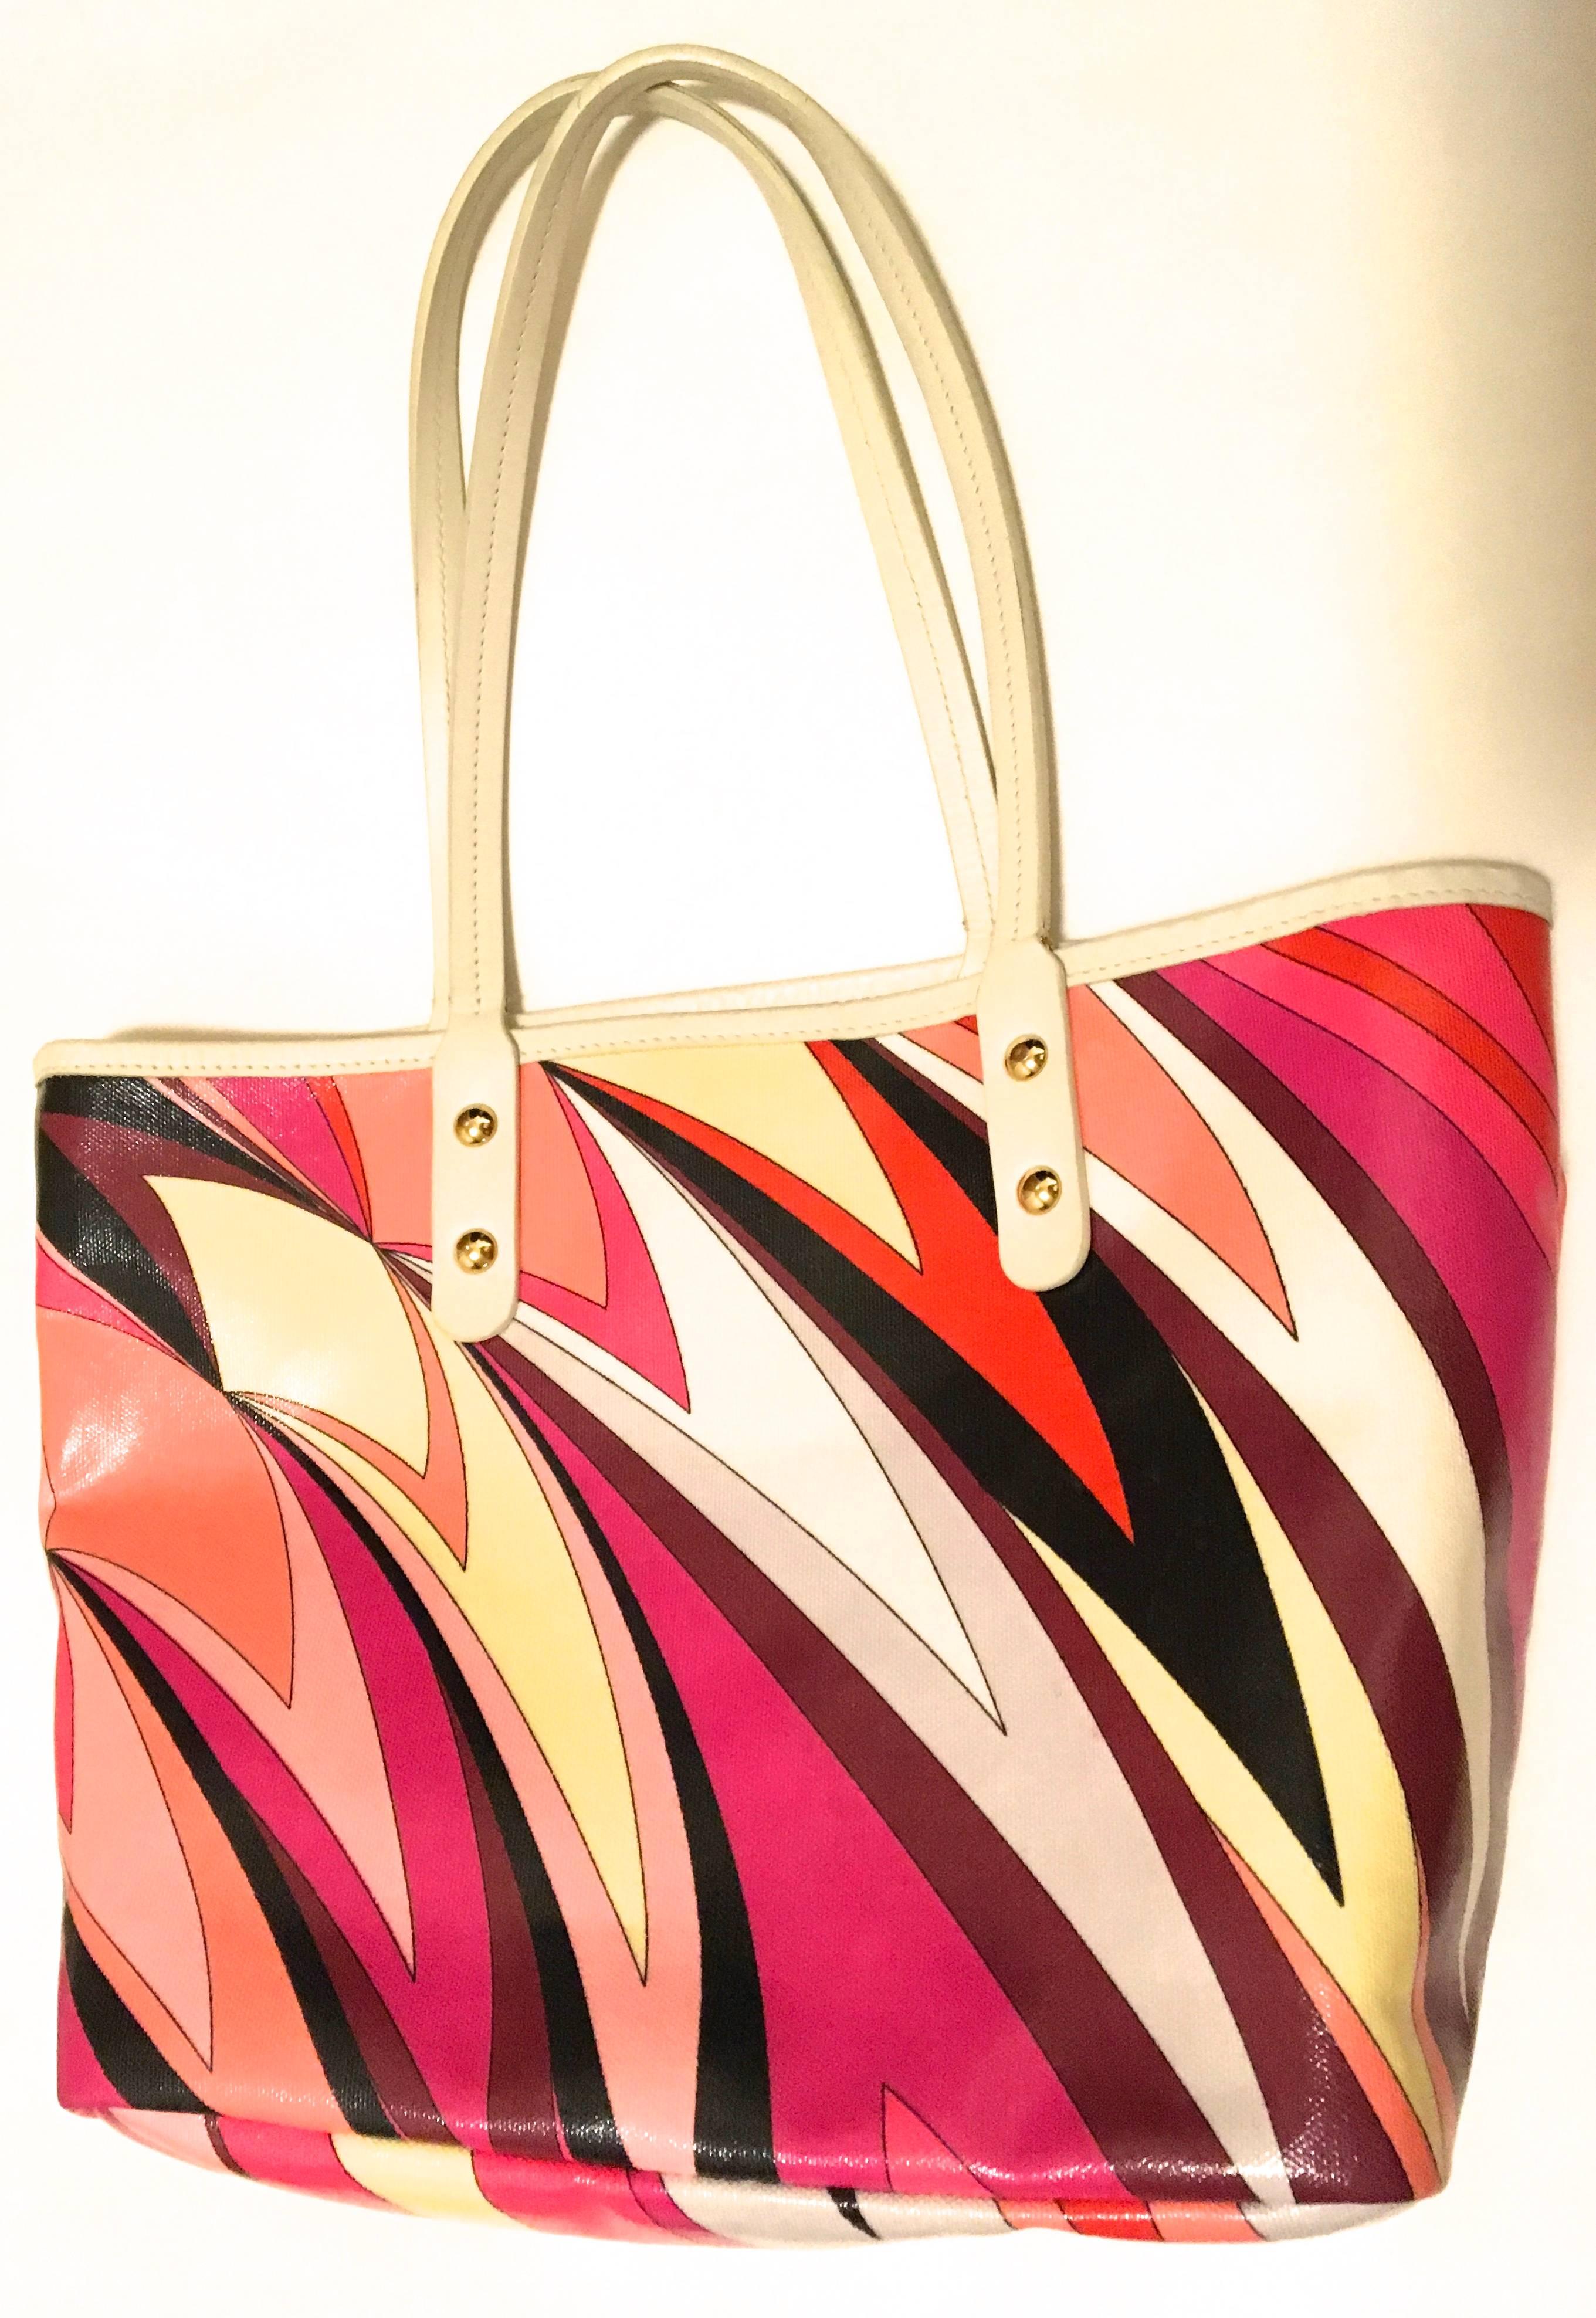 Emilio Pucci Tote Bag In Excellent Condition For Sale In Boca Raton, FL